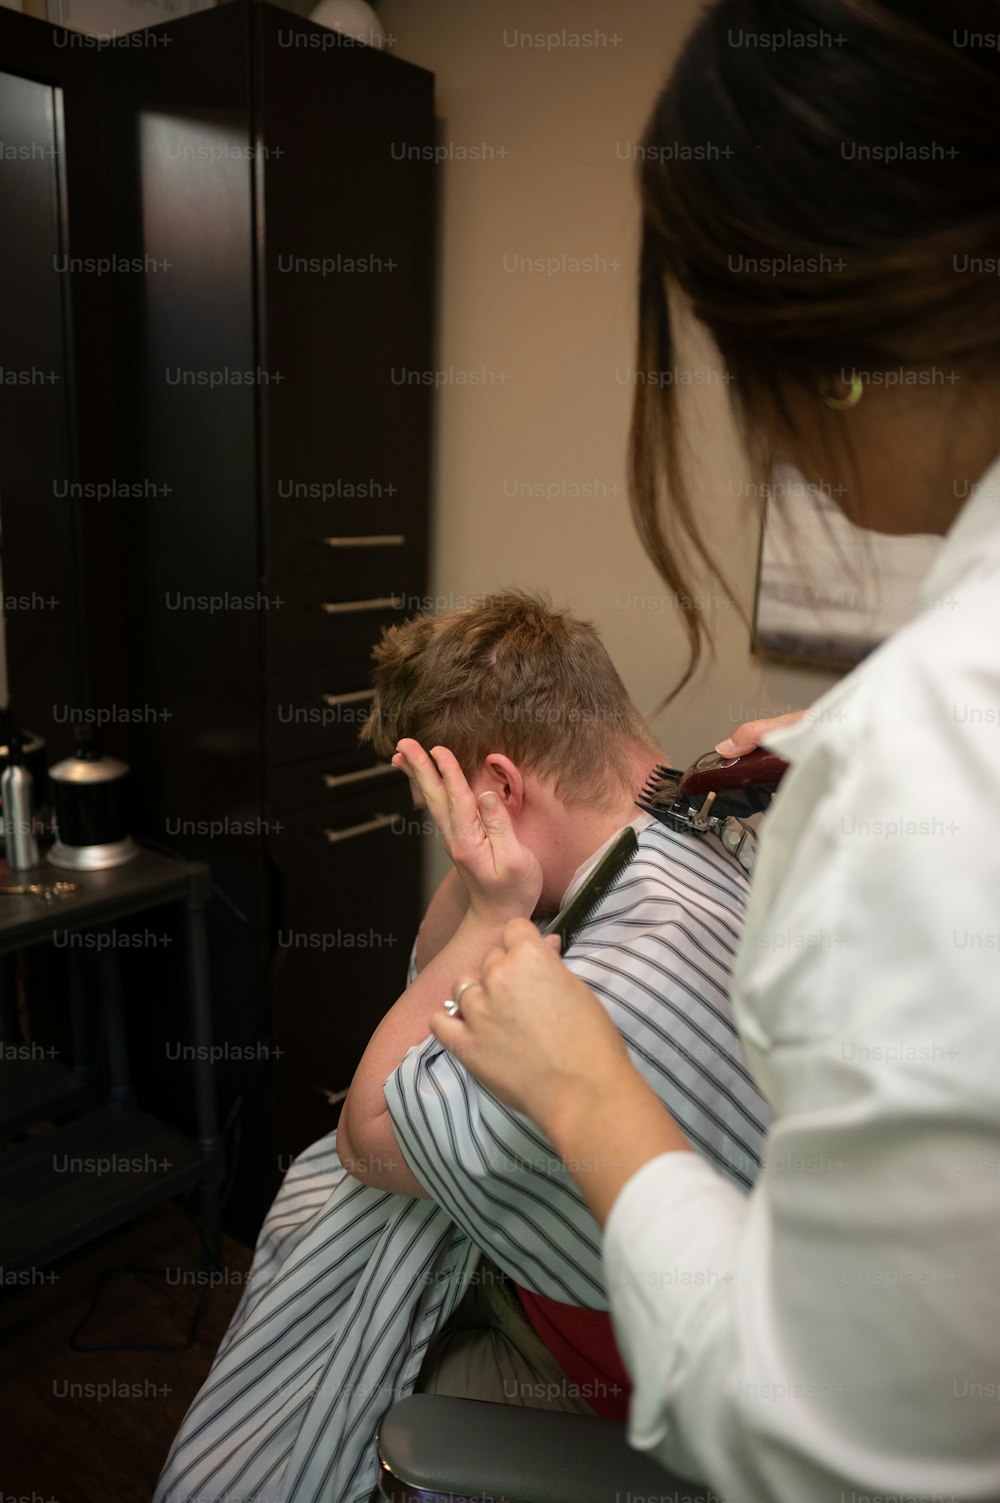 Un homme se fait couper les cheveux par une femme